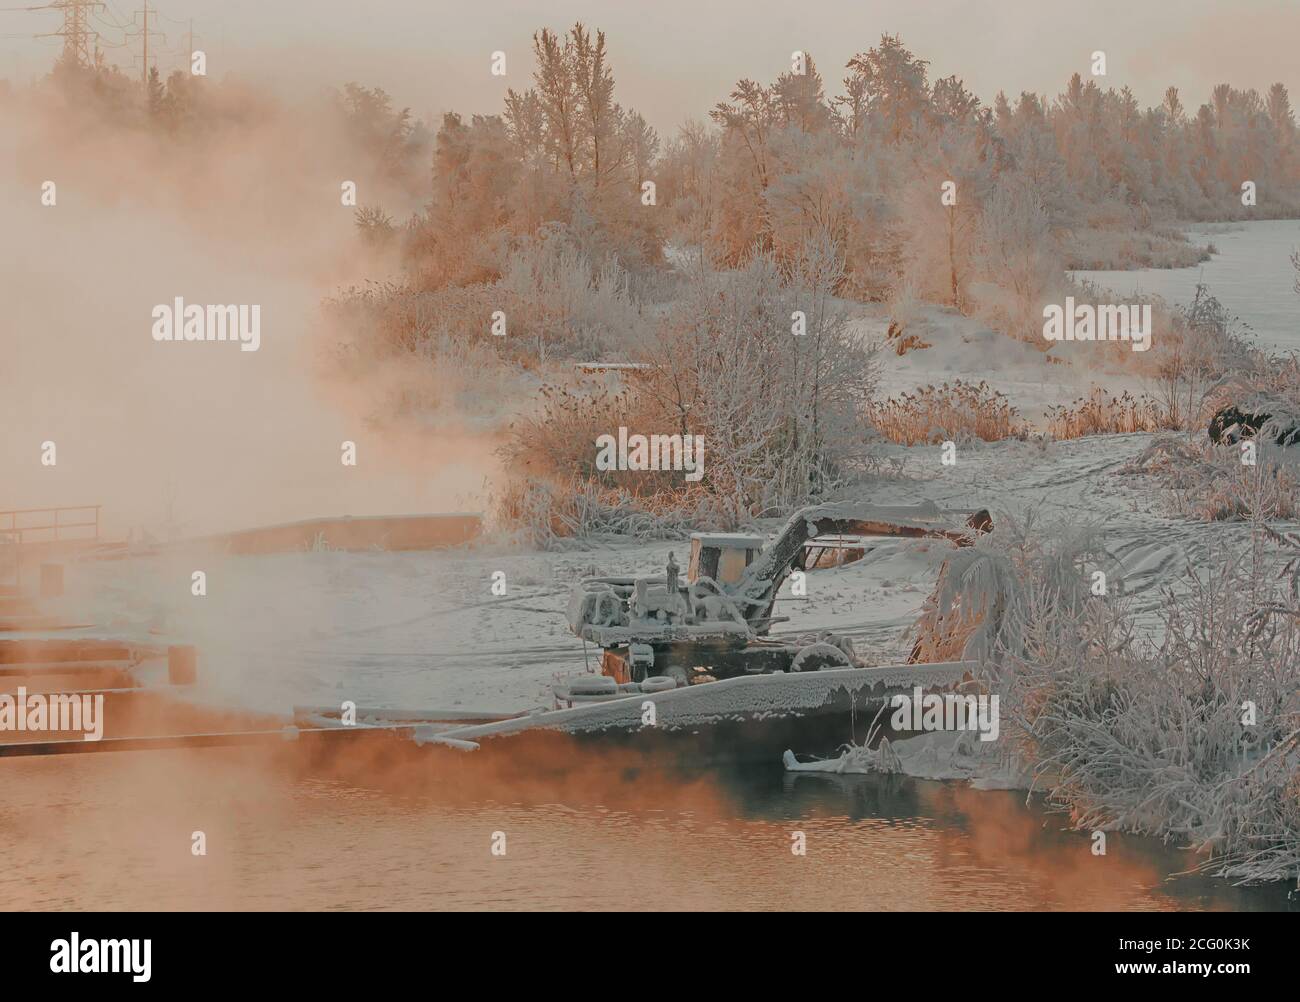 Viejo excavador entre árboles congelados. Misteriosa niebla sobre el río en el paisaje industrial Foto de stock